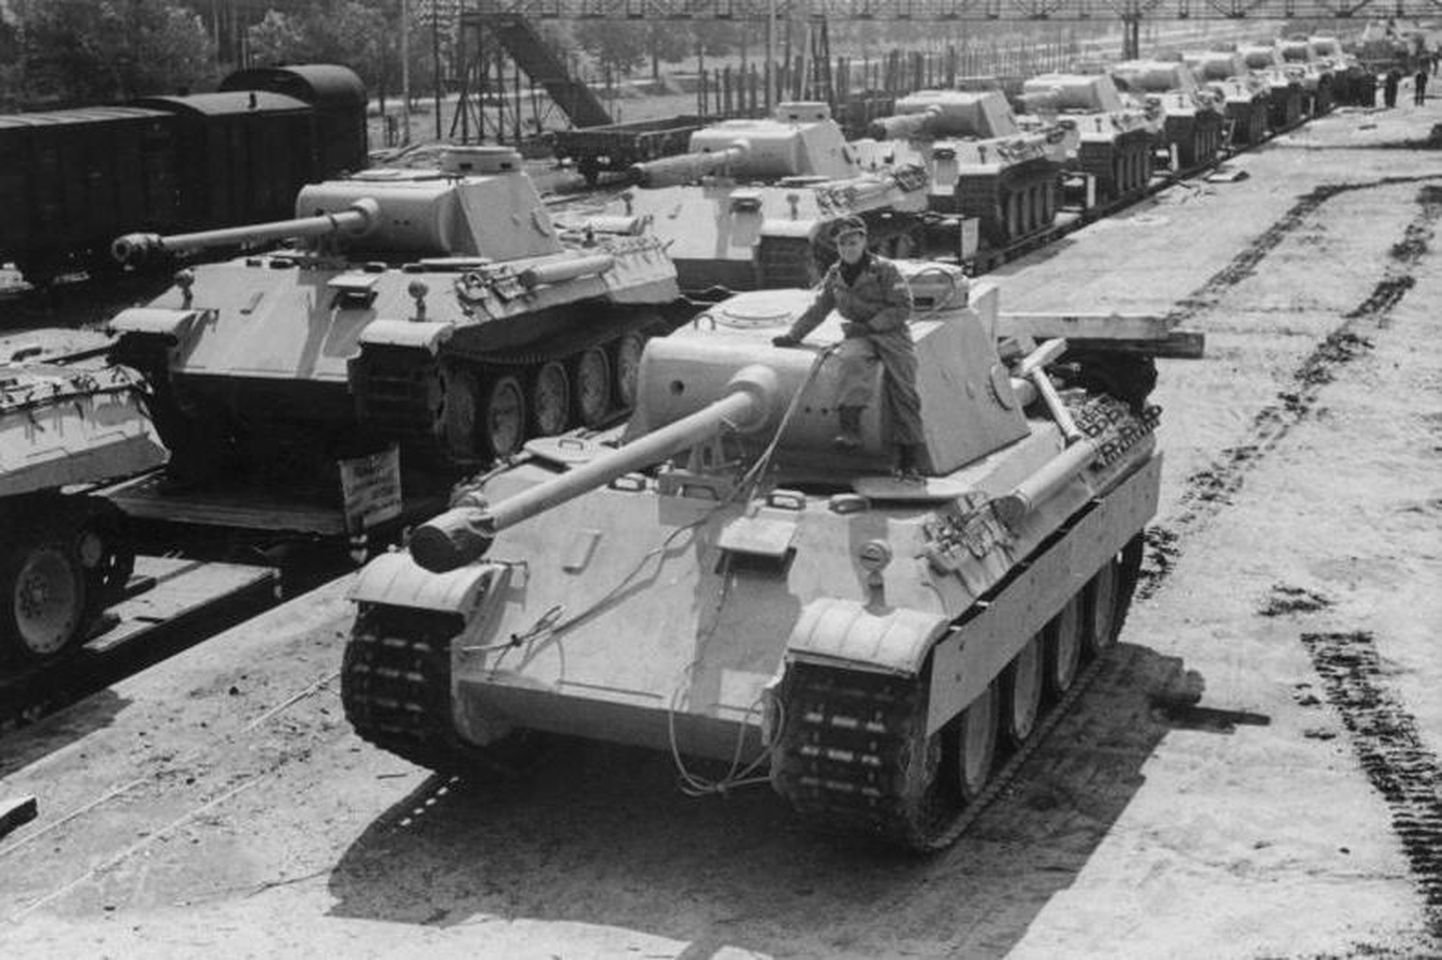 Saksamaa Panther tank